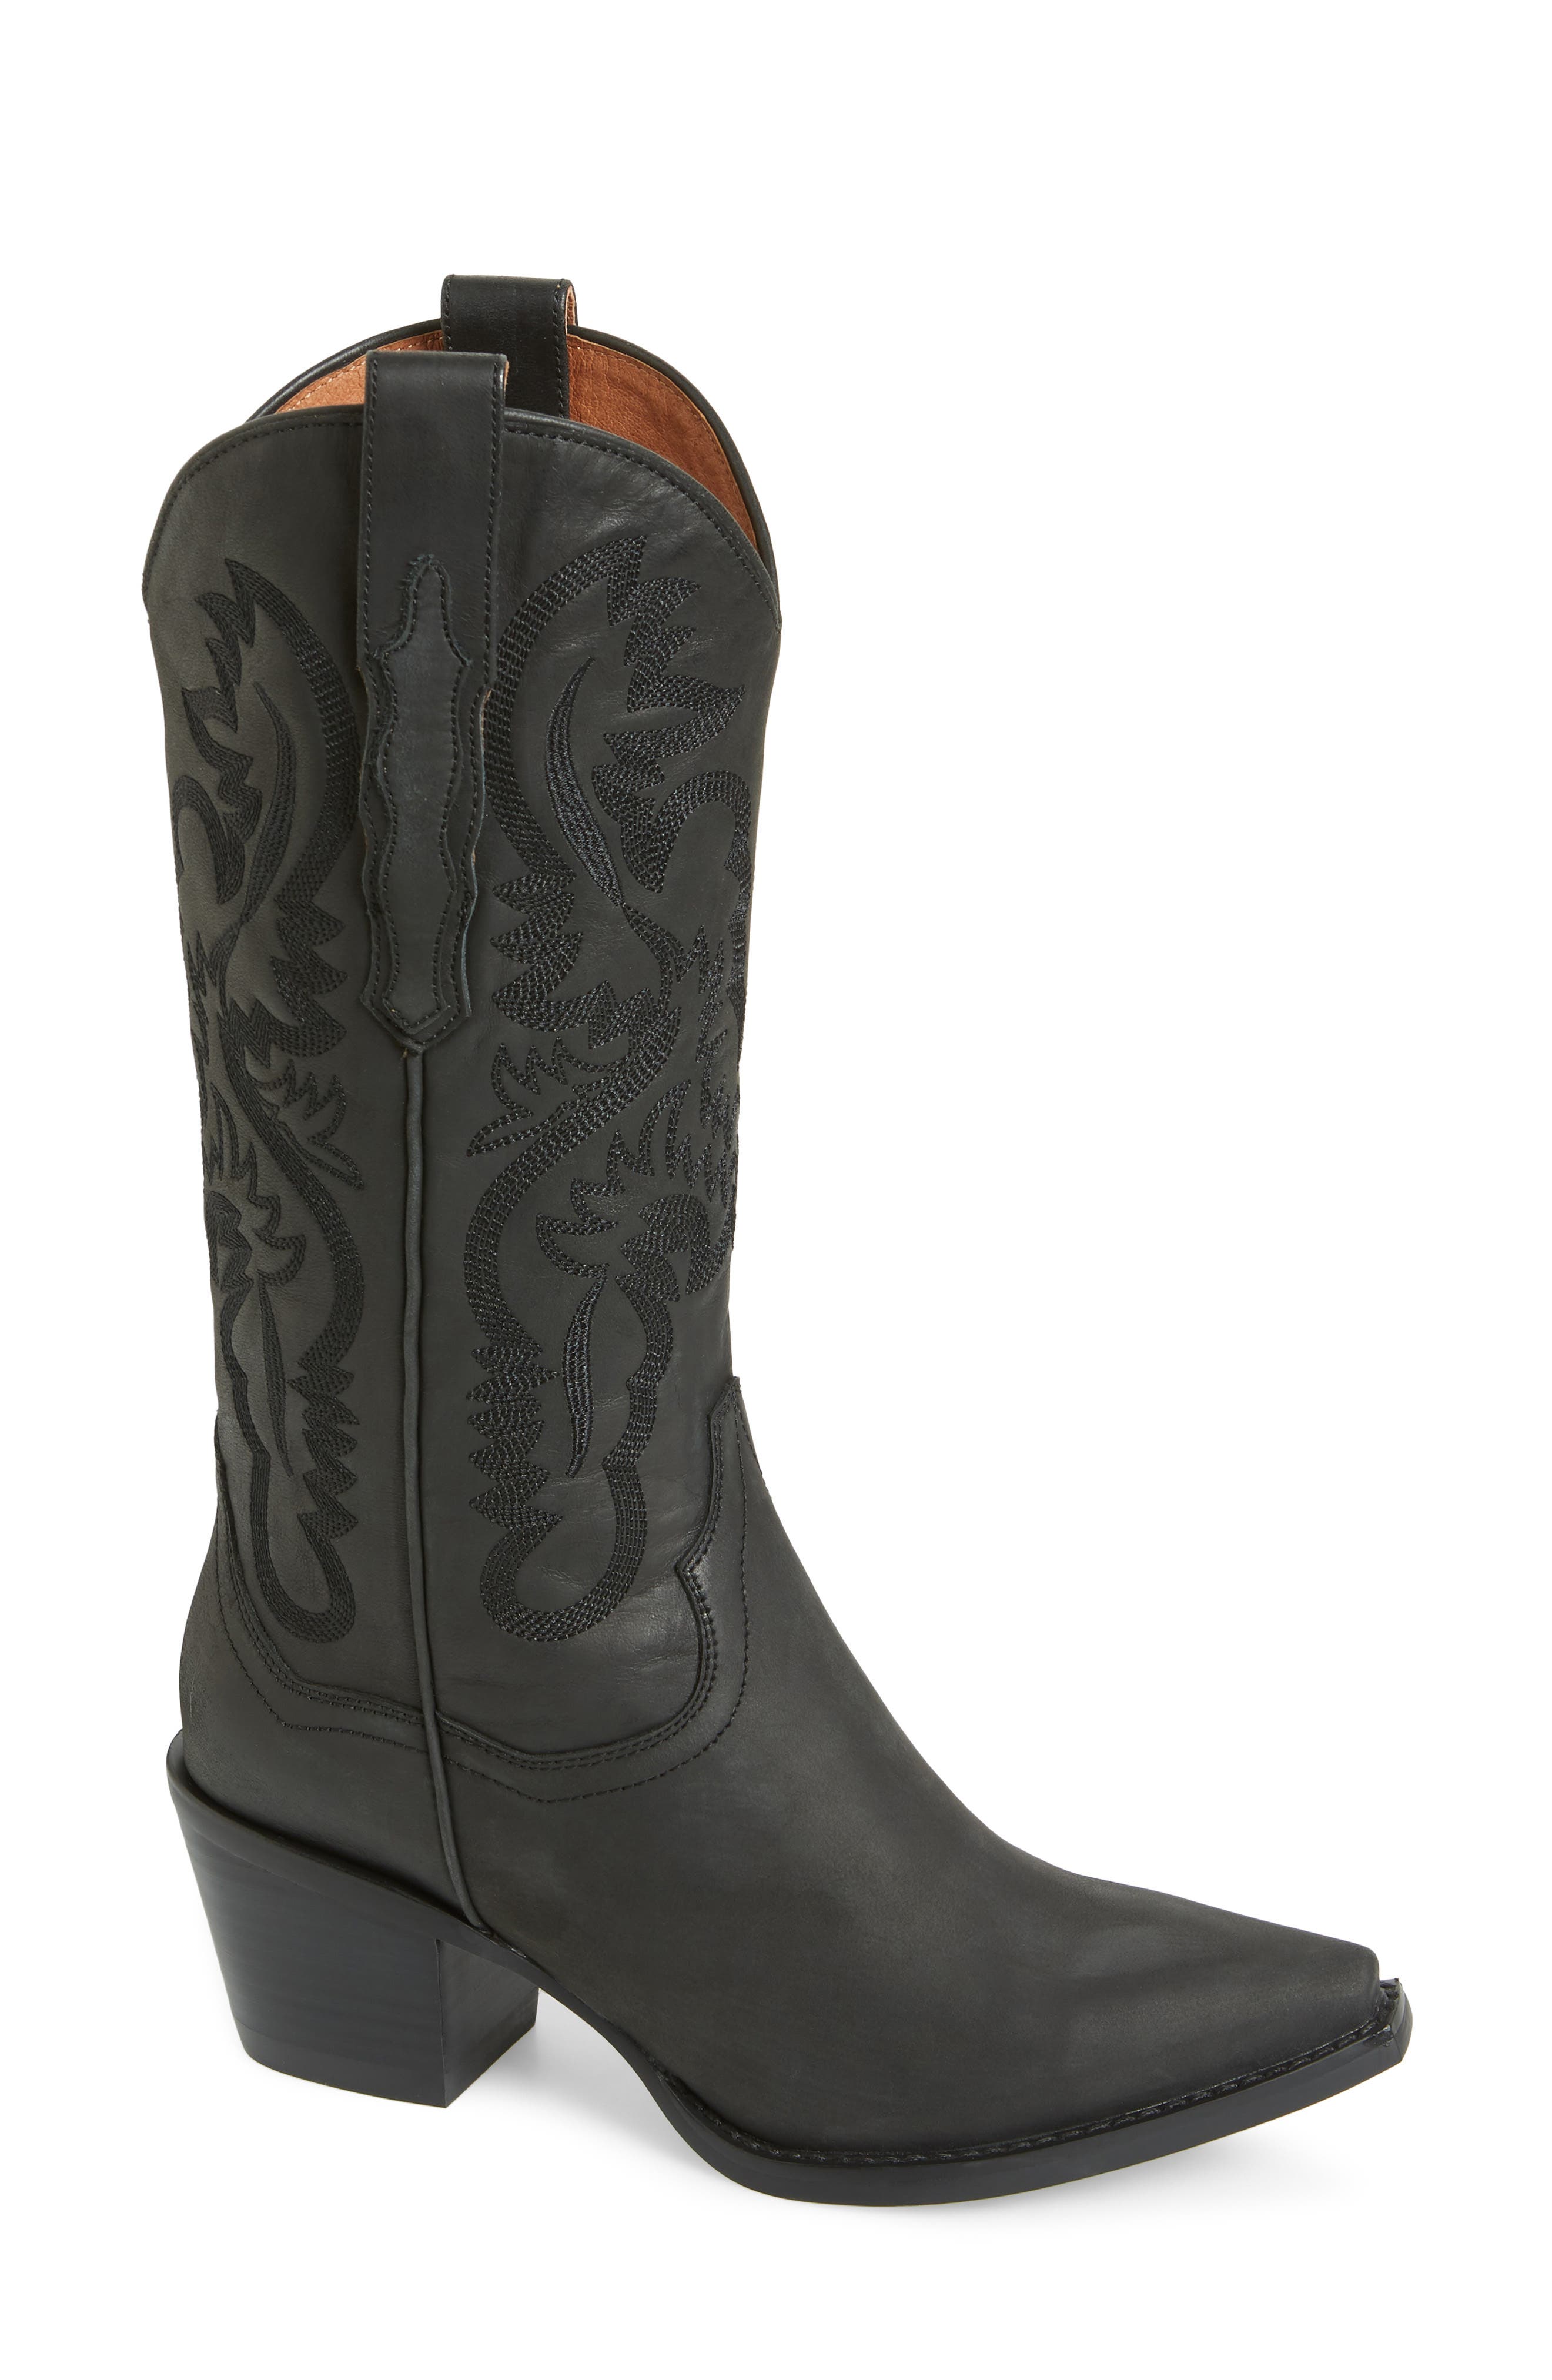 wide calf boot brands 272124 1688059829800